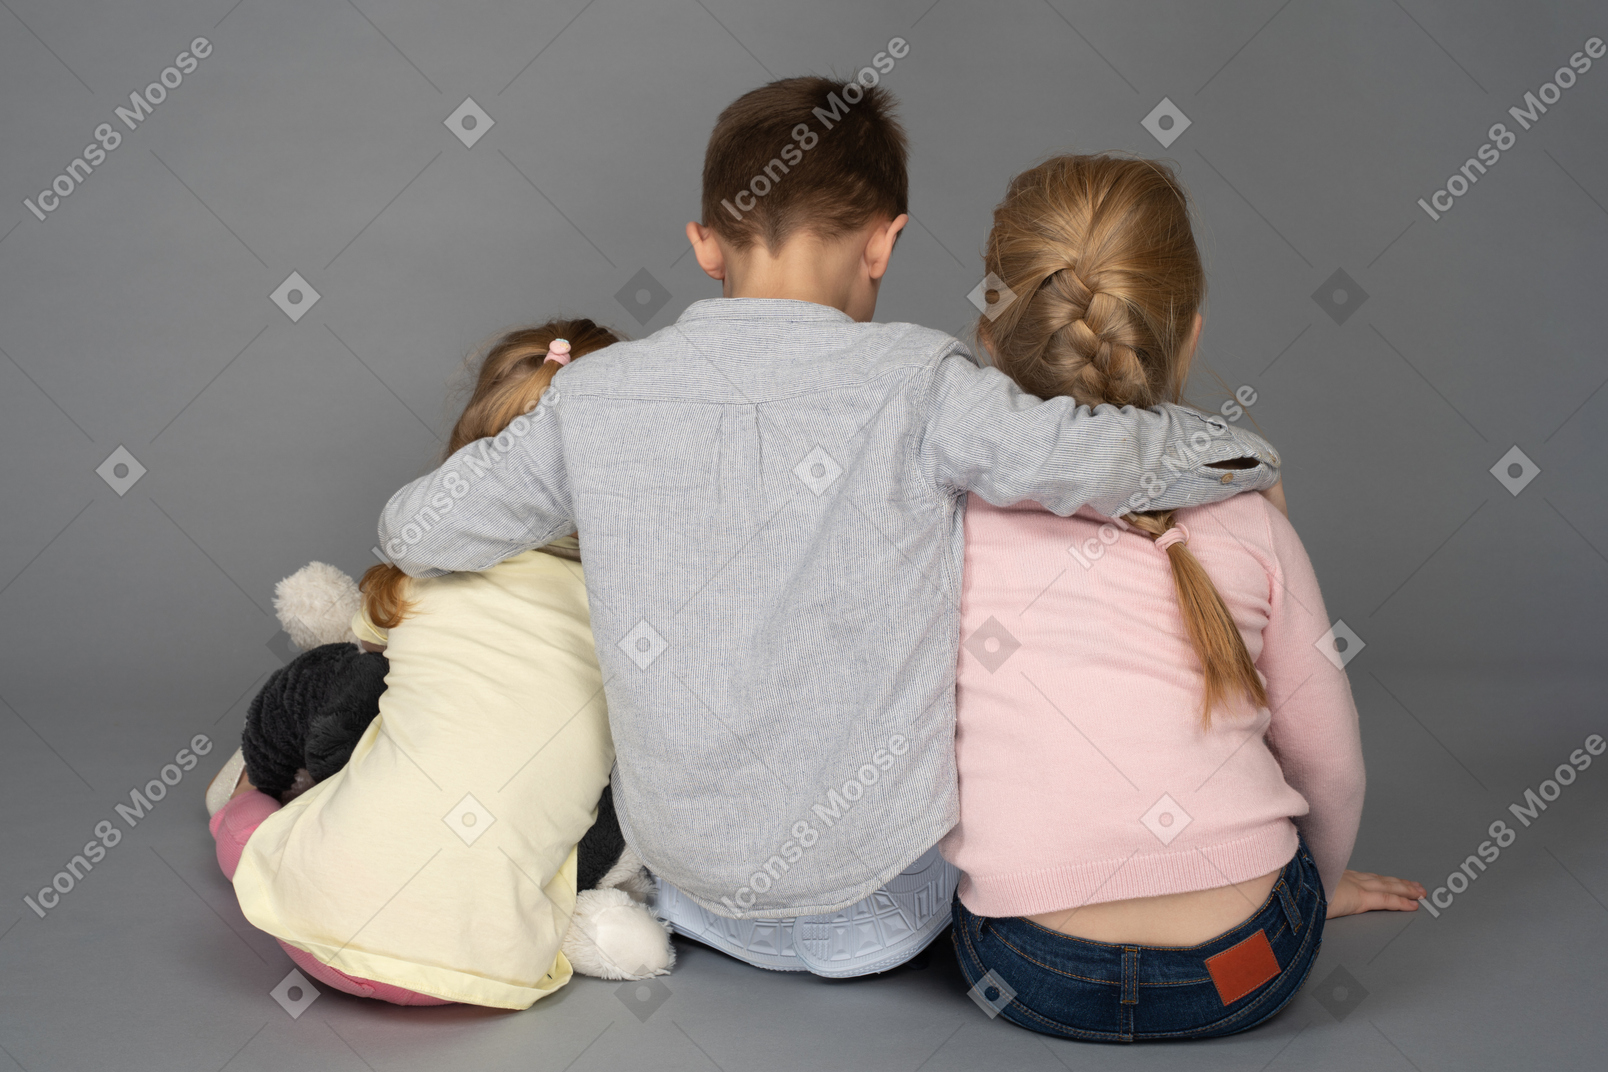 男孩拥抱两个小女孩回到相机